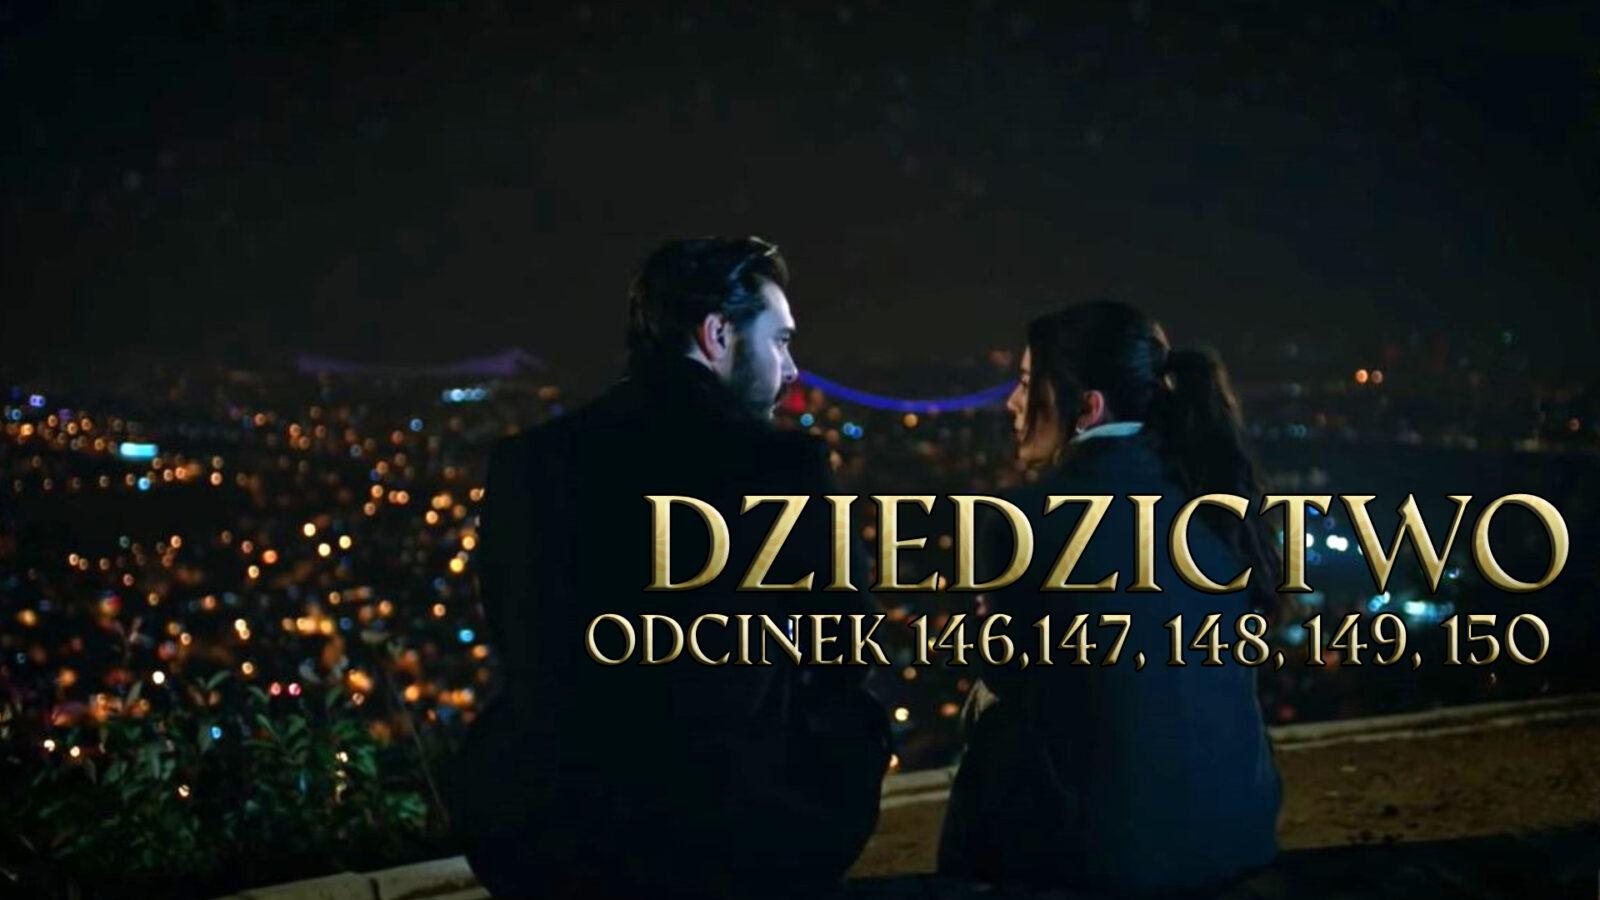 Dziedzictwo odcinki 146, 147, 148, 149, 150 online ZA DARMO – Oglądaj serial turecki DZIEDZICTWO na TVP VOD